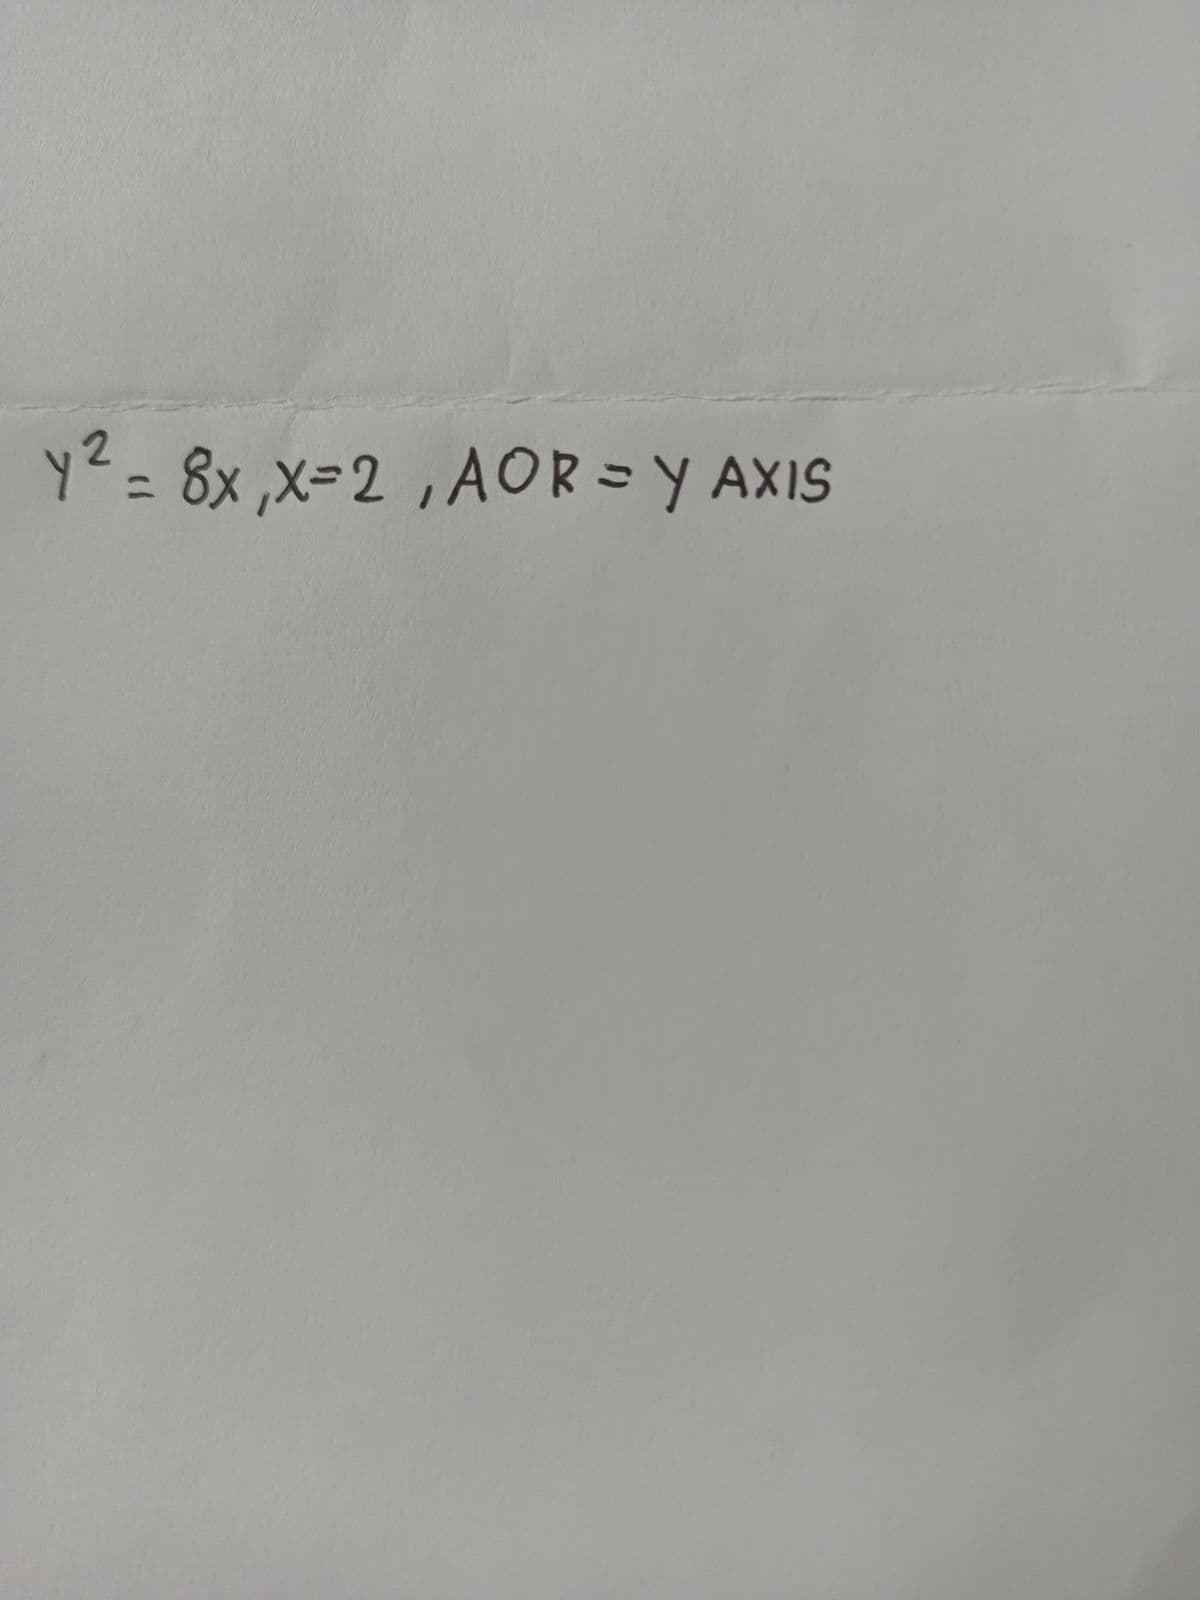 y² = 8x,x=2, AOR=Y AXIS
ye